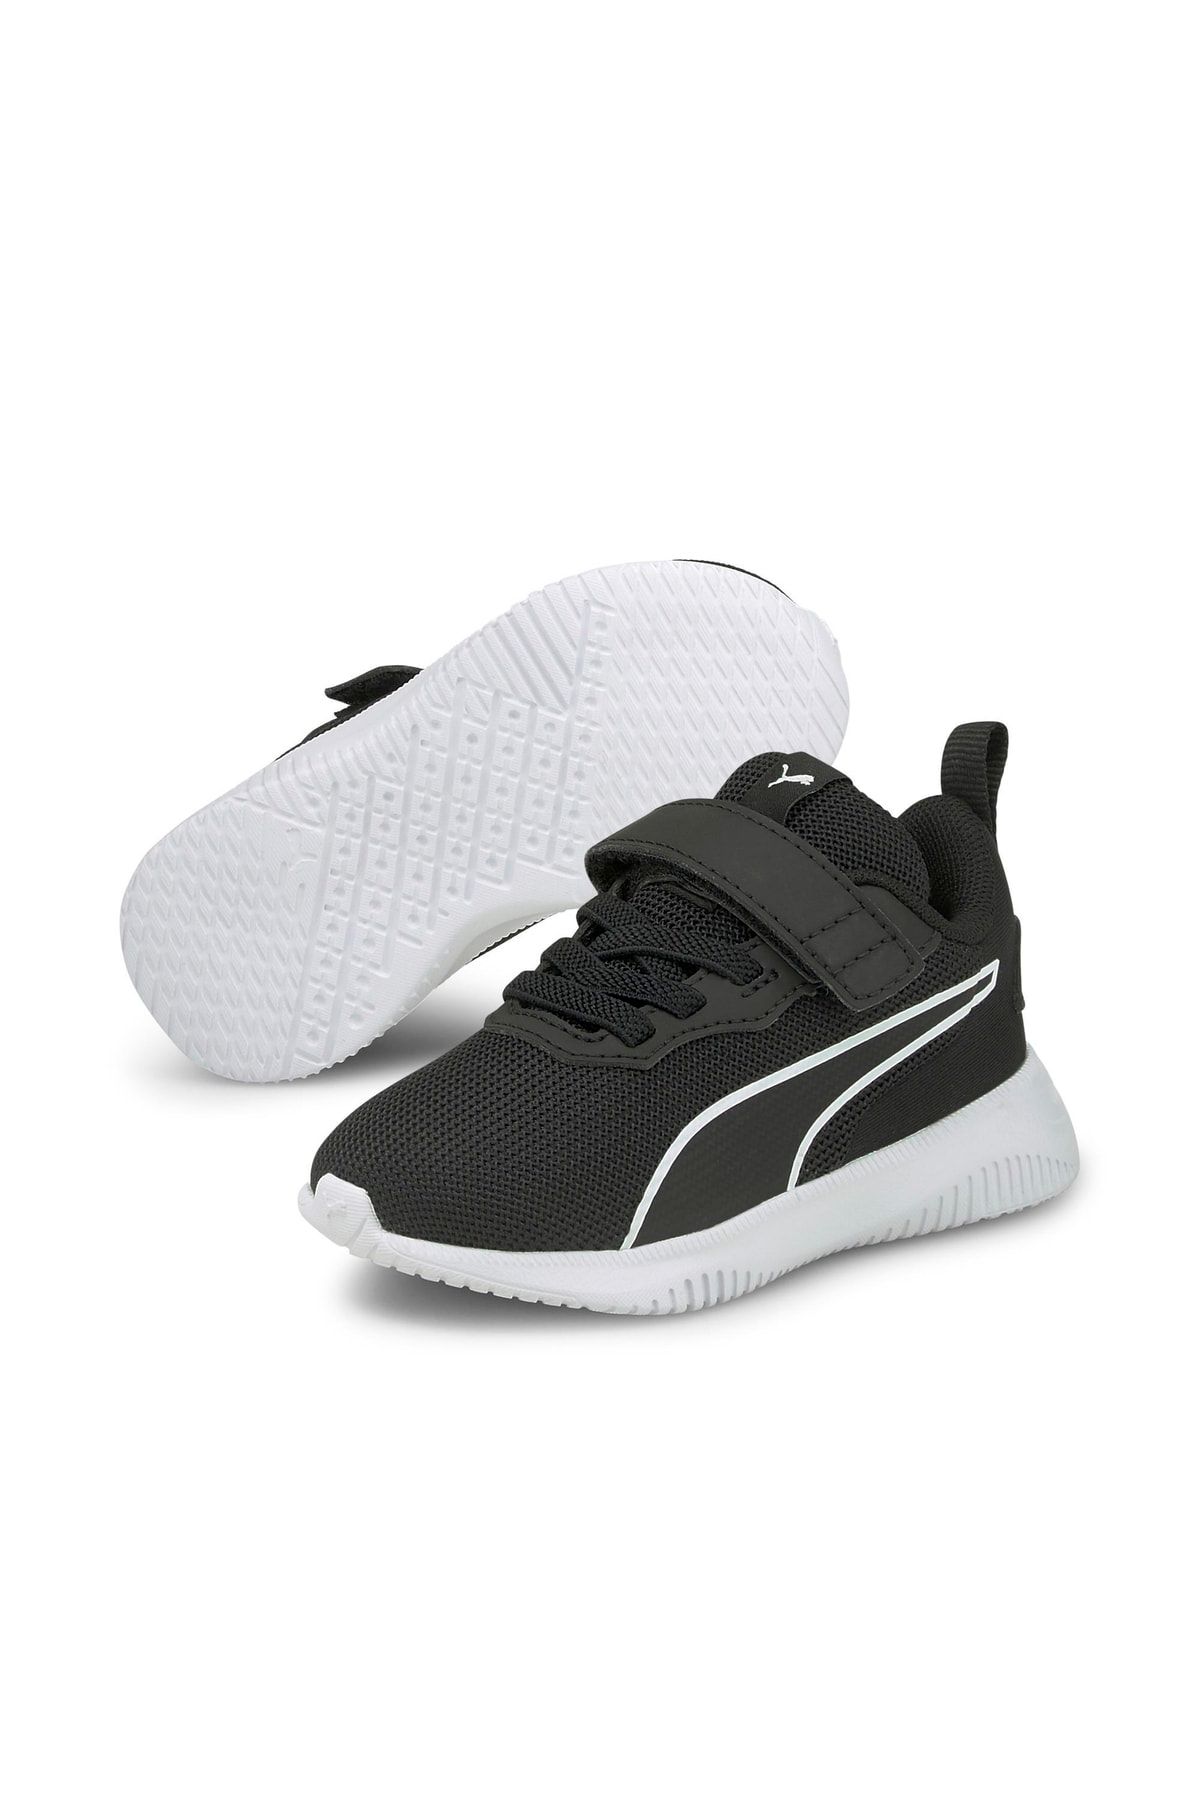 Puma Flyer Flex Ac Inf - Siyah Bebek Spor Ayakkabısı